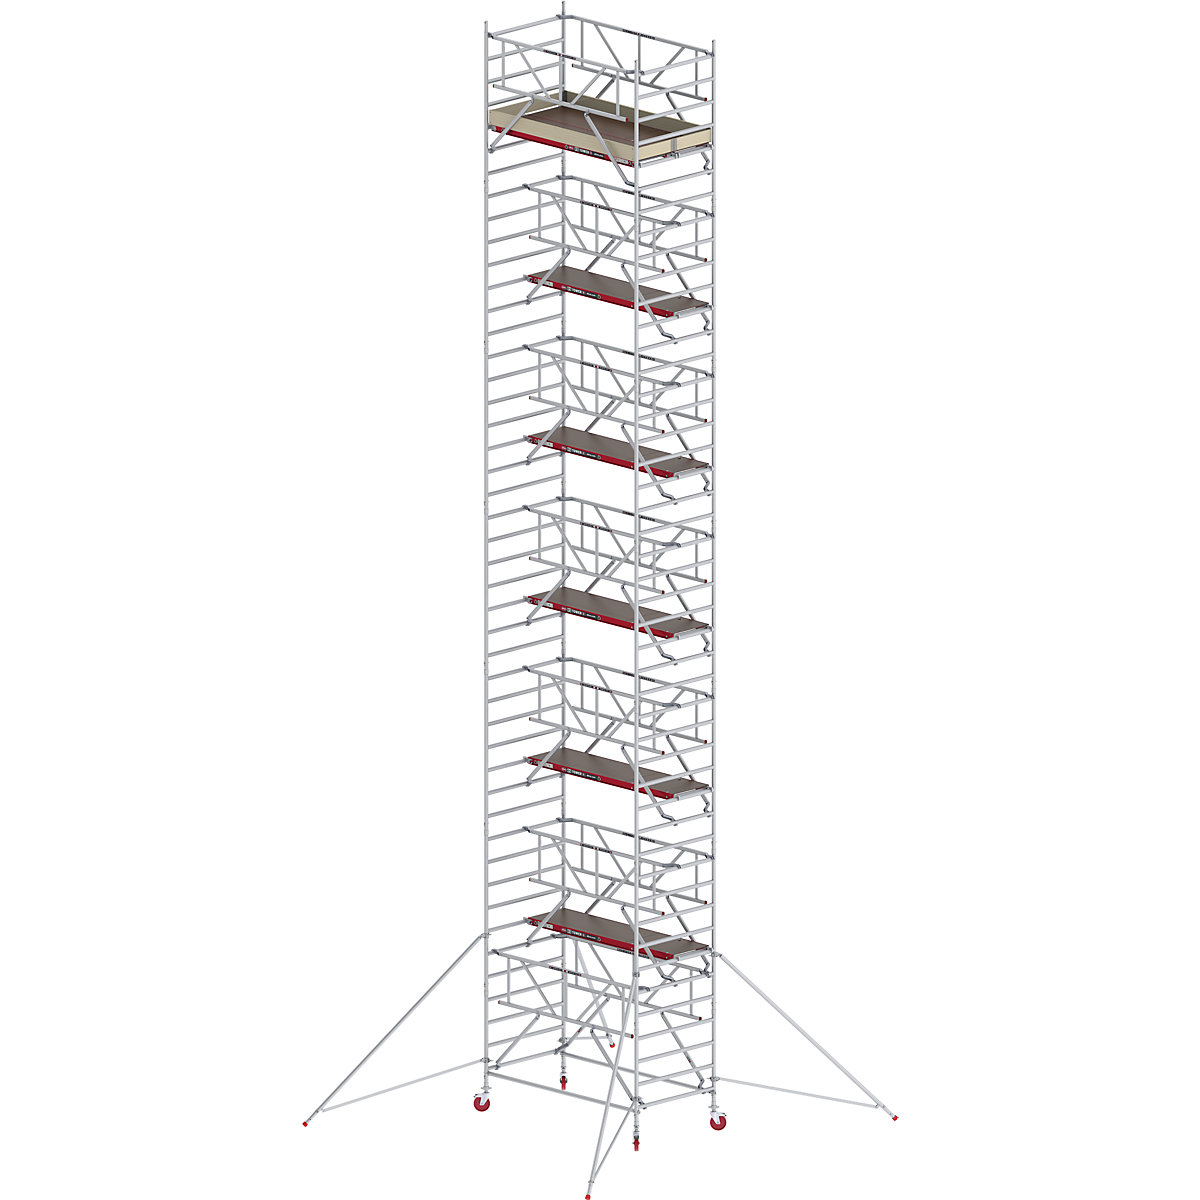 Trabattello mobile RS TOWER 42 largo con Safe-Quick® – Altrex, piattaforma in legno, lunghezza 2,45 m, altezza di lavoro 14,2 m-2